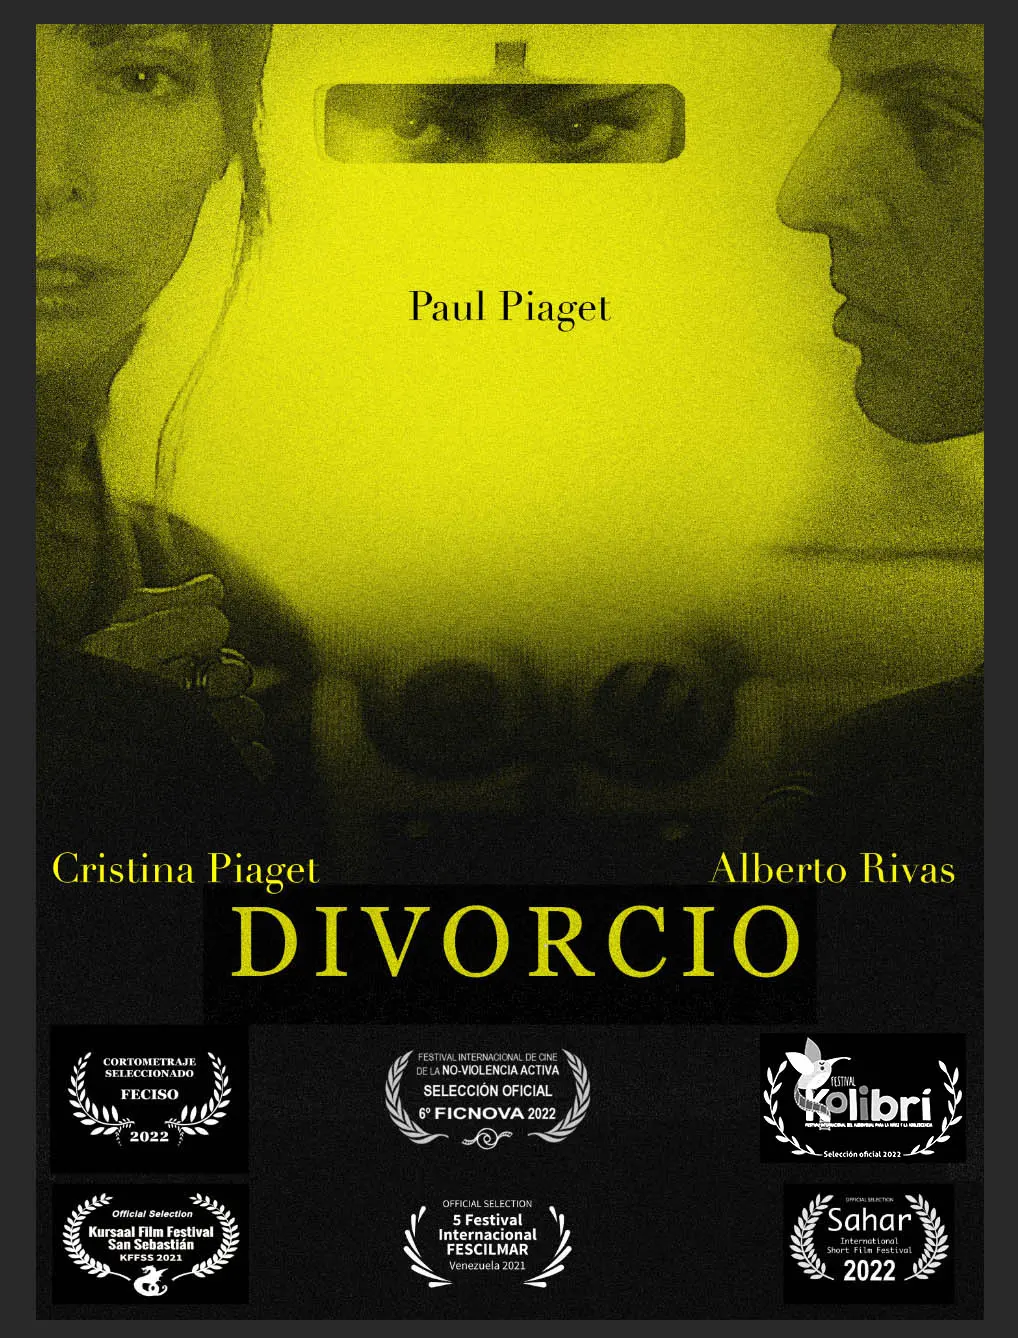 Alberto Rivas director - Divorcio